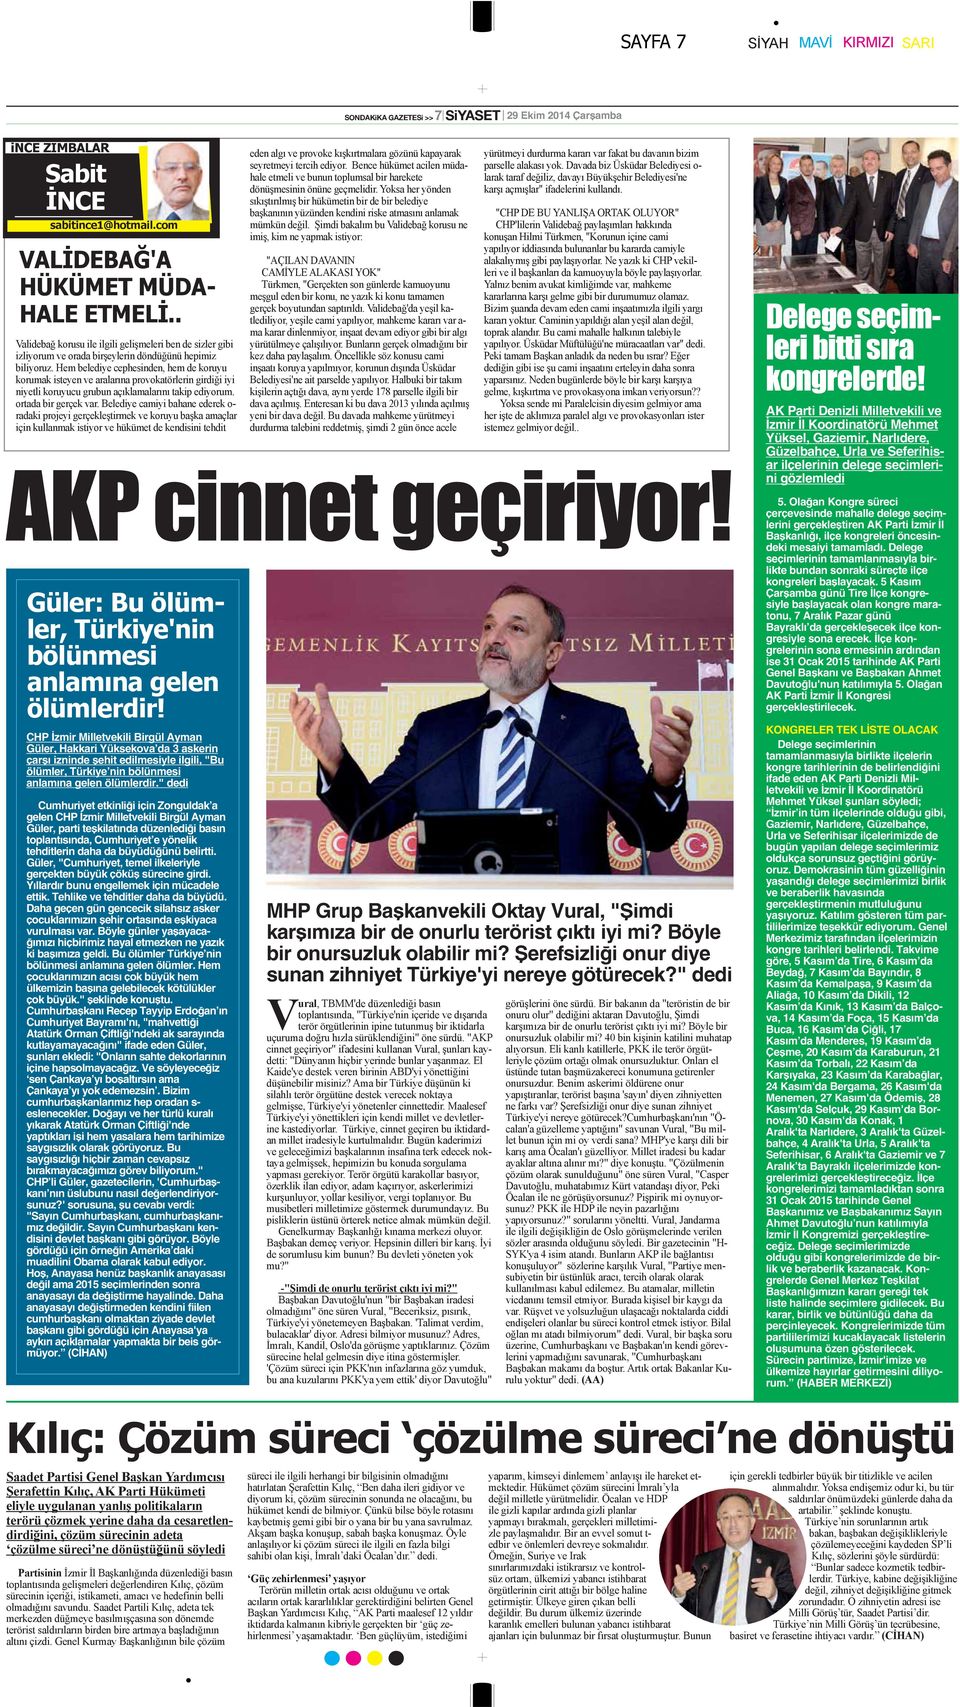 " dedi Cumhuriyet etkinliği için Zonguldak a gelen CHP İzmir Milletvekili Birgül Ayman Güler, parti teşkilatında düzenlediği basın toplantısında, Cumhuriyet e yönelik tehditlerin daha da büyüdüğünü